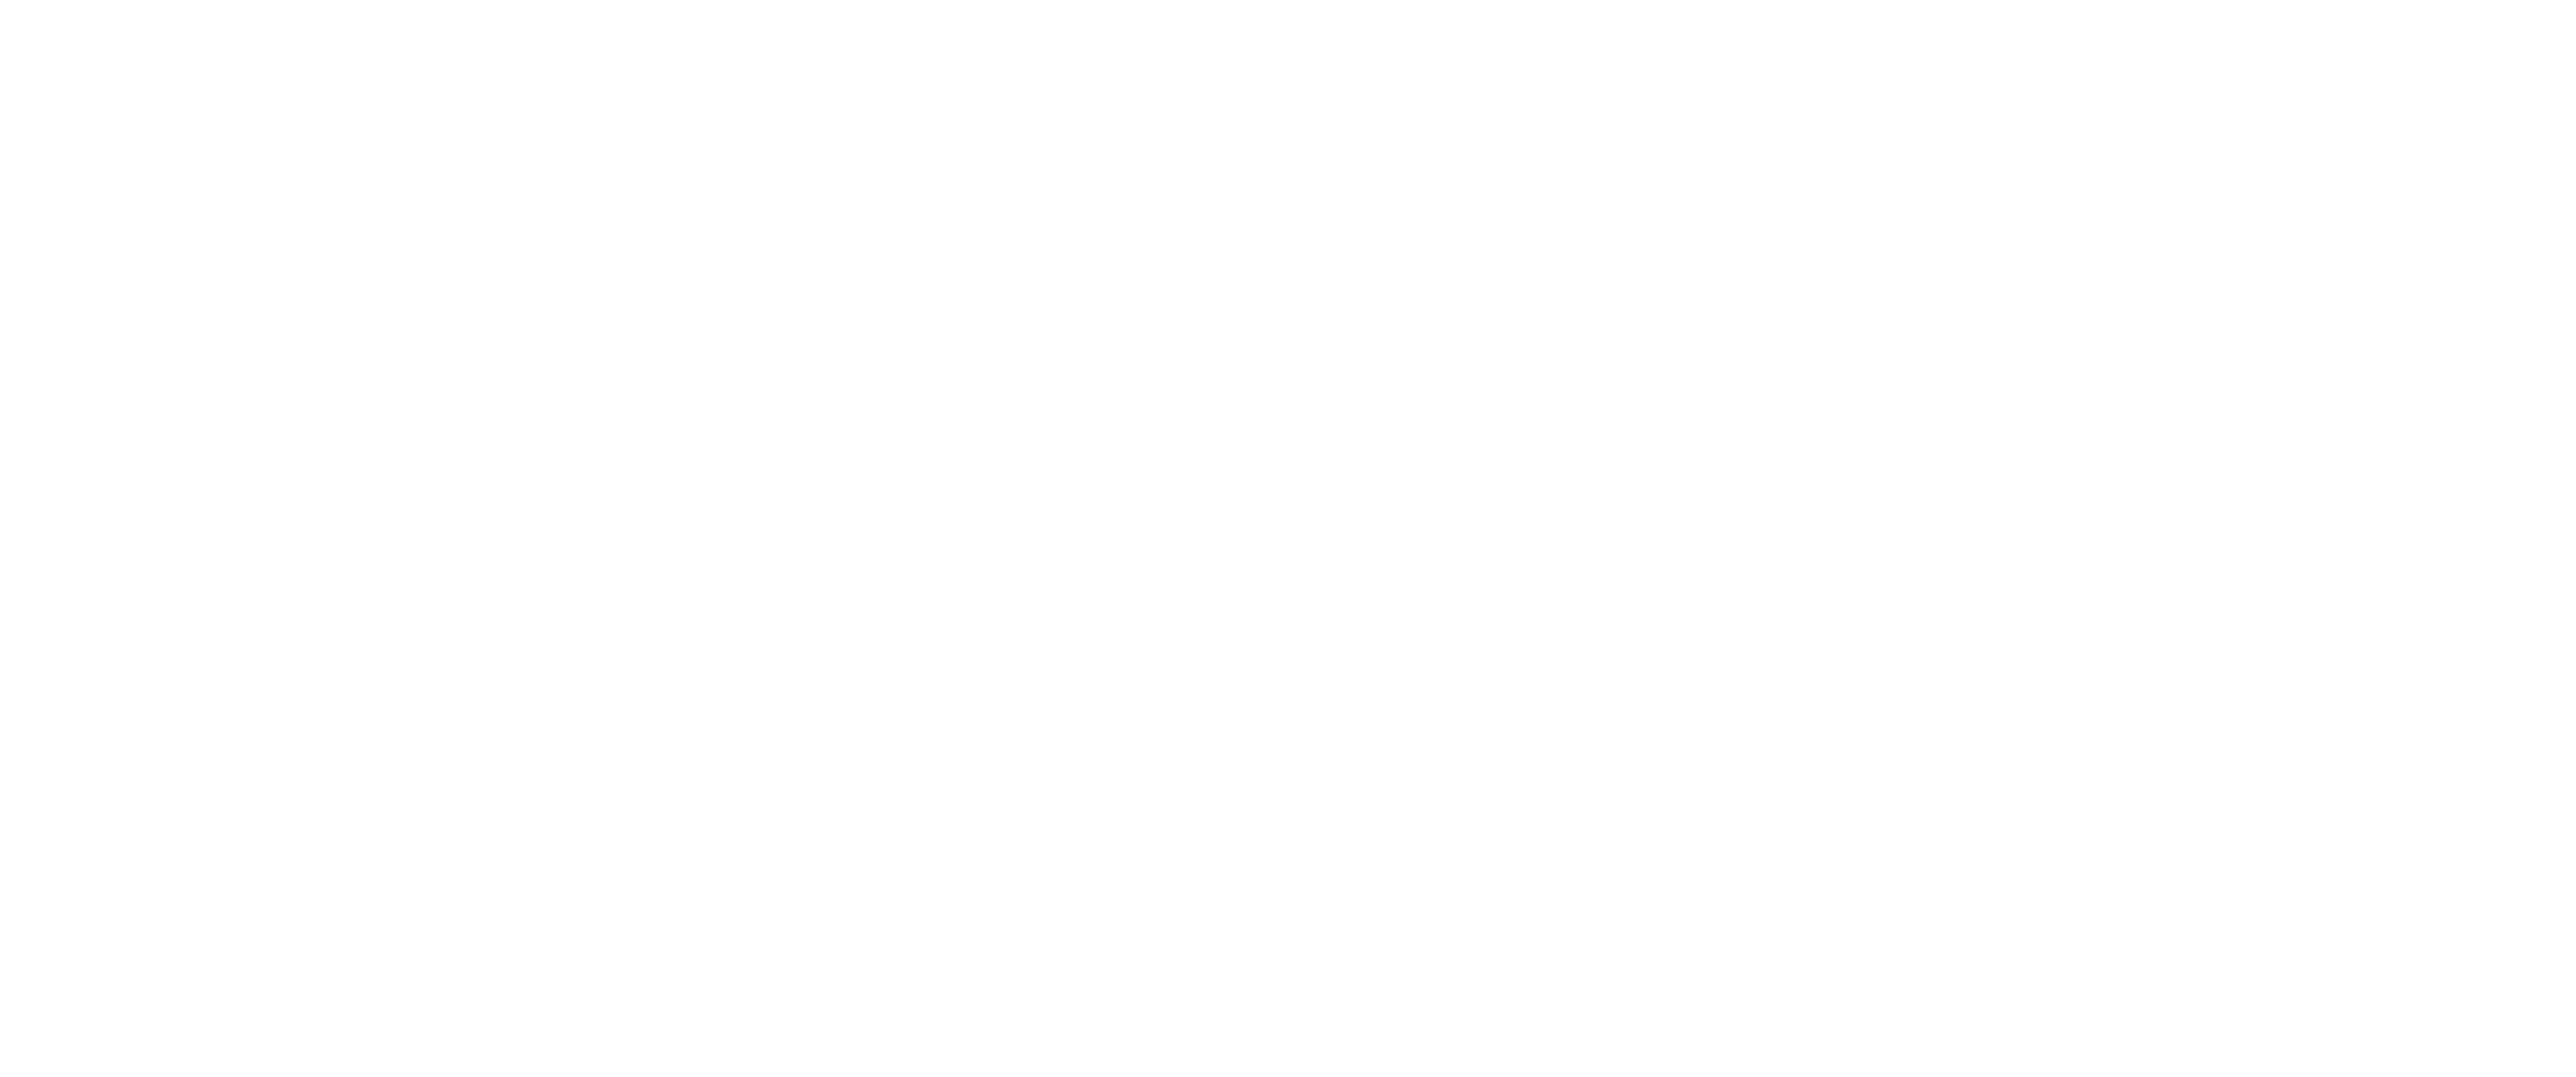 Pyszne.pl (English)